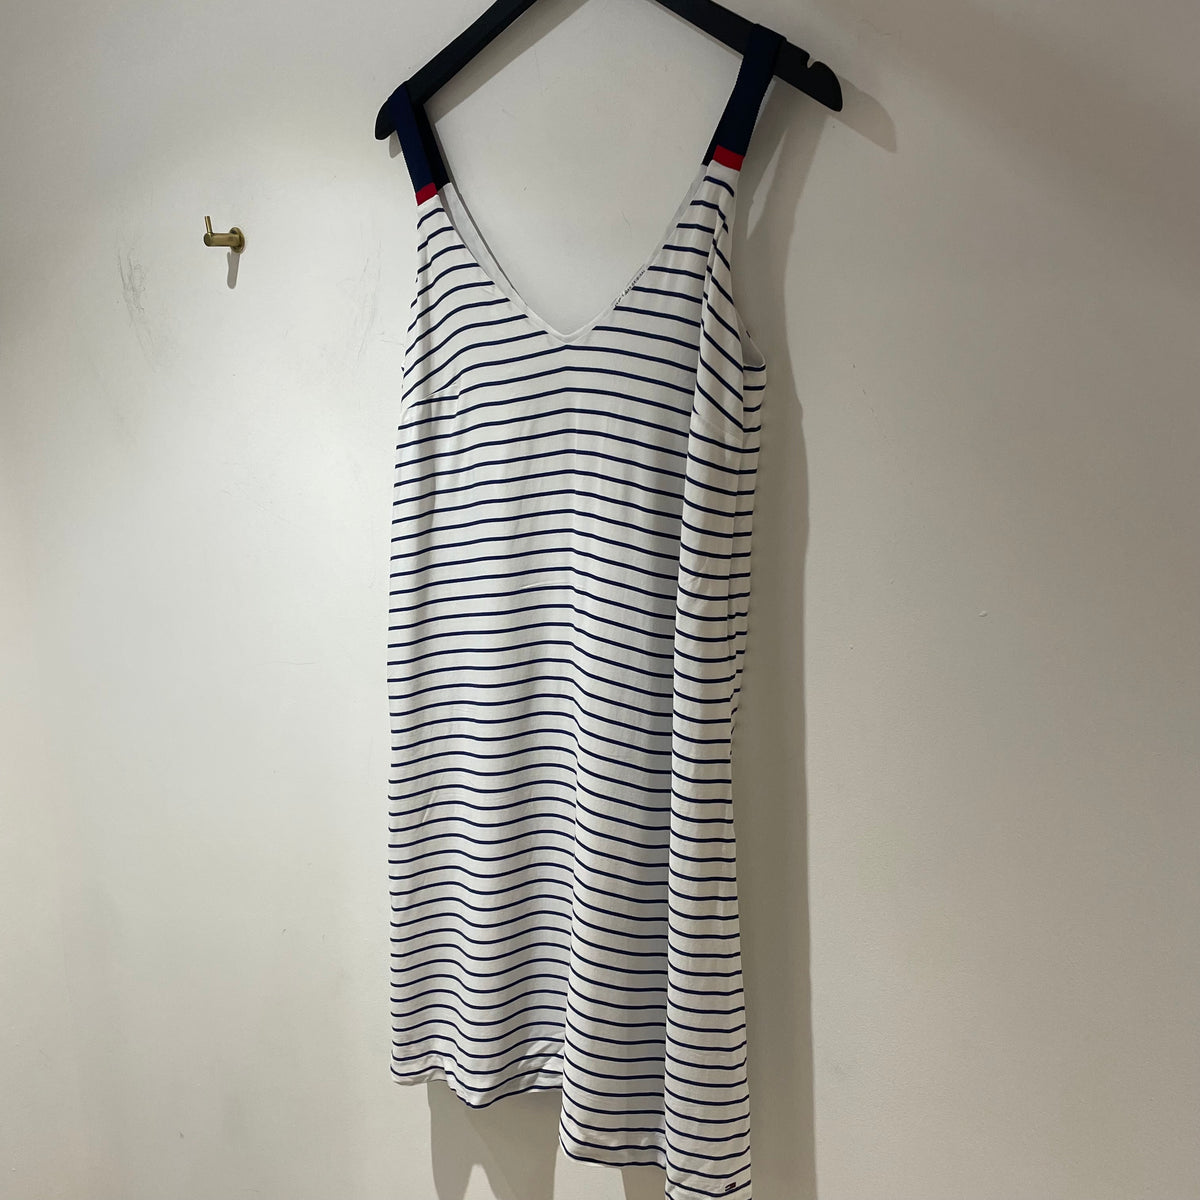 Hilfiger denim stripe sun dress Navy/white M